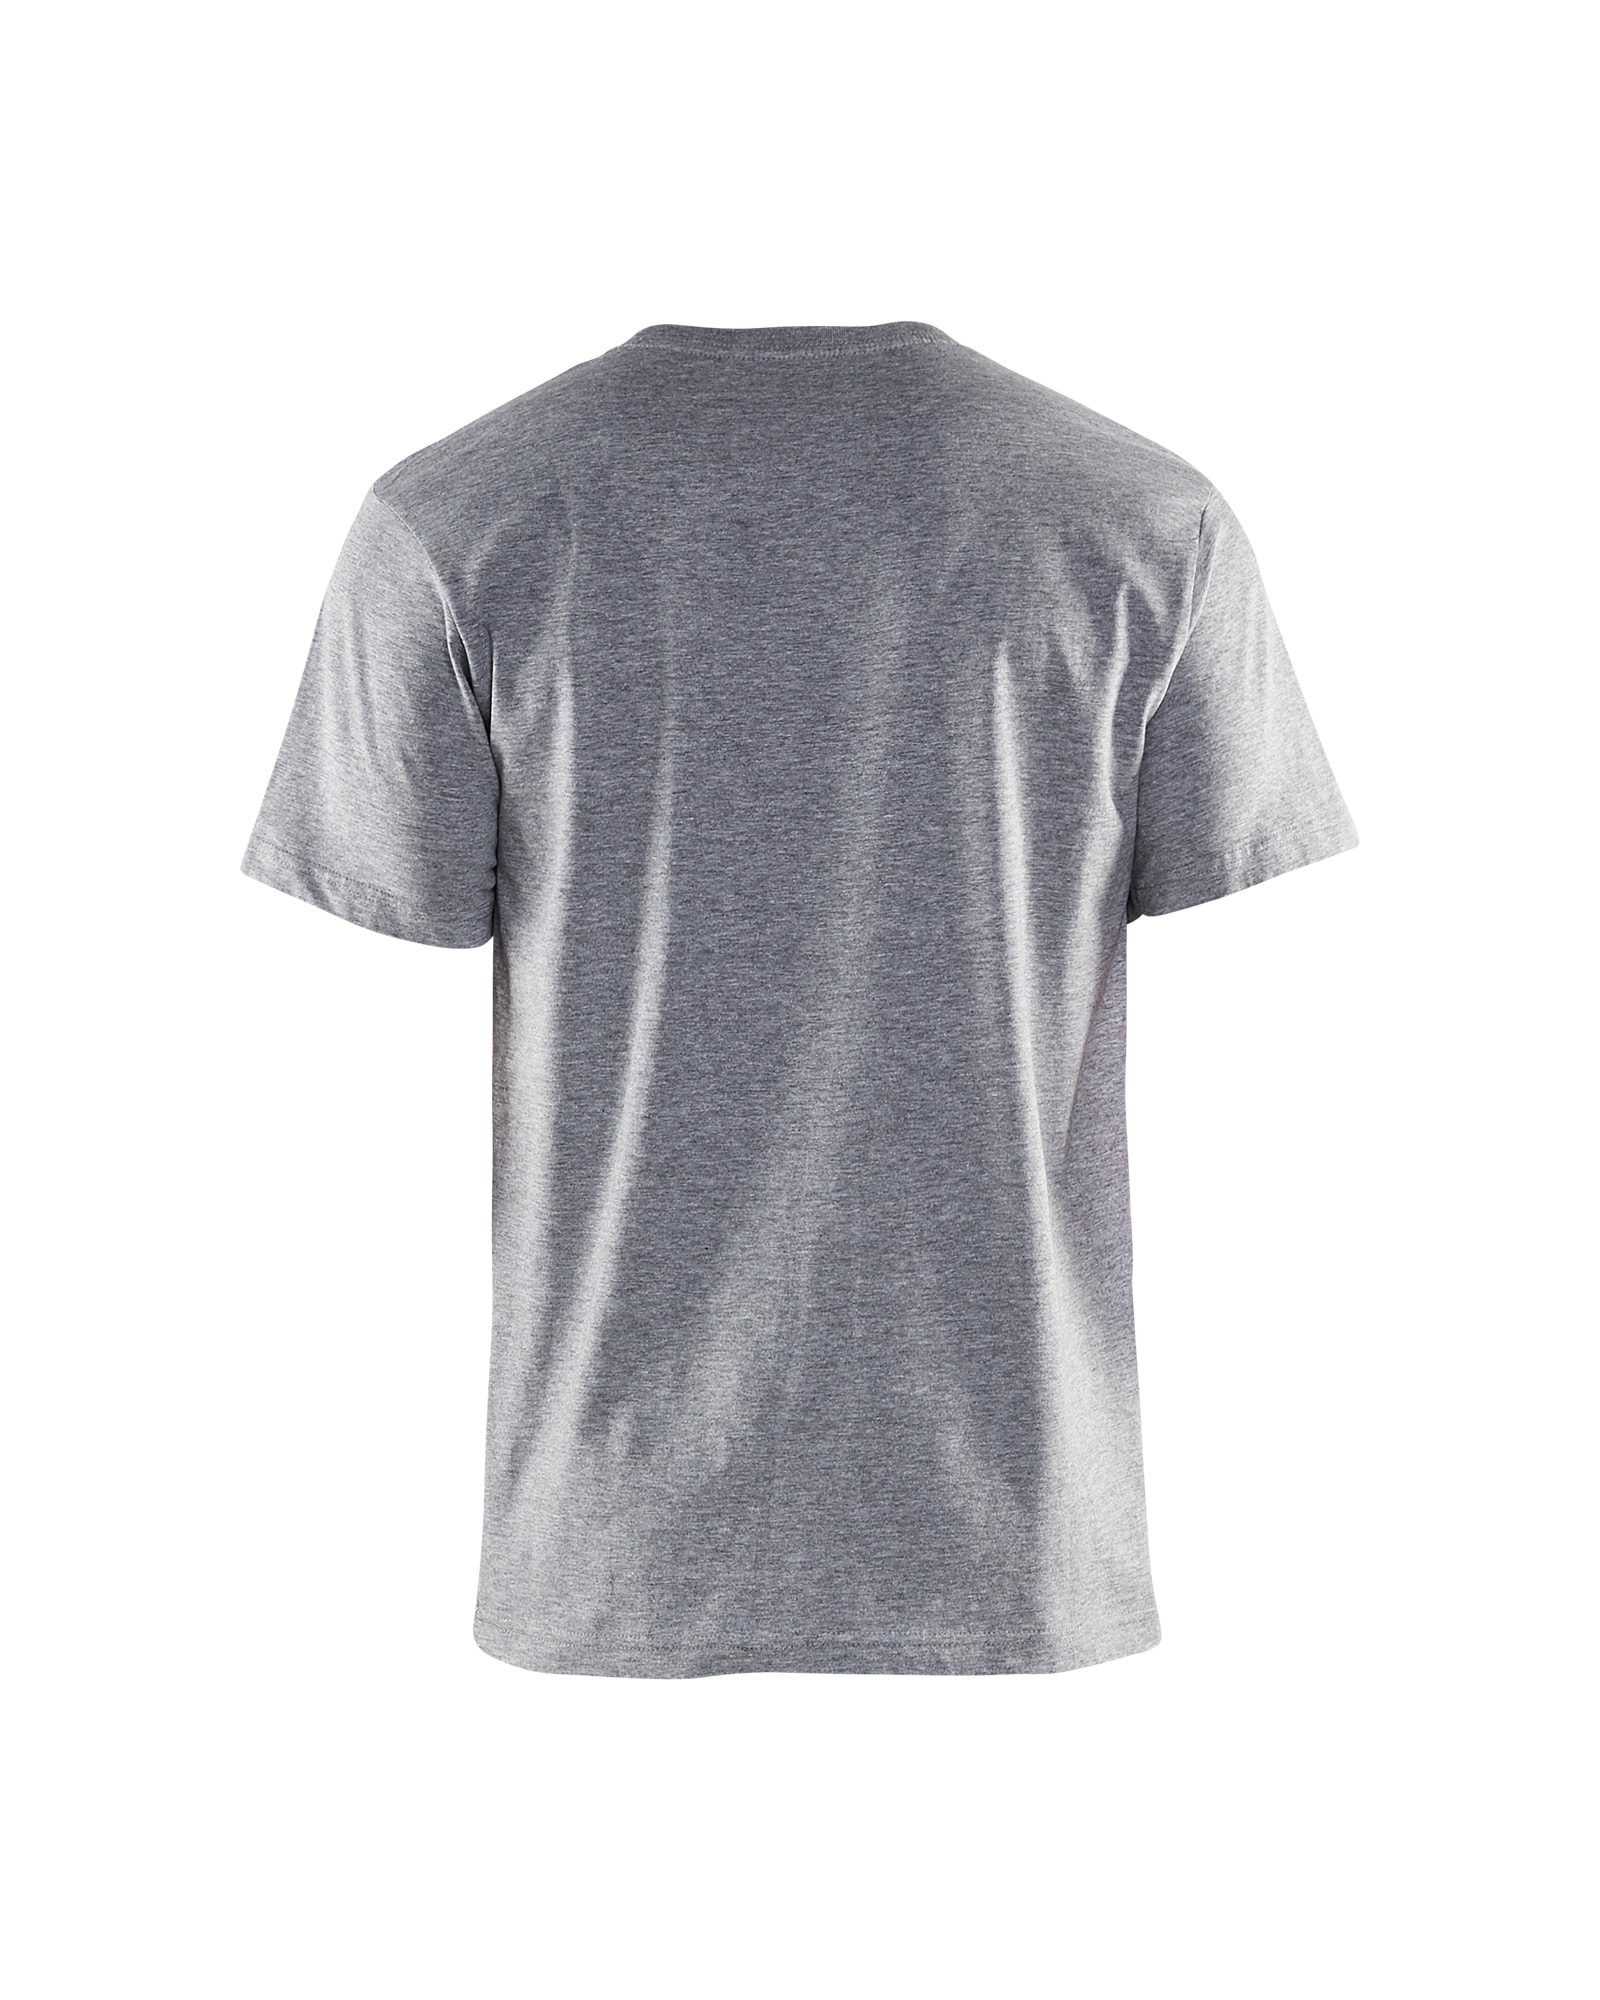 3300 1033 Blakläder T-Shirt Grau Melange, bis Größe 6XL